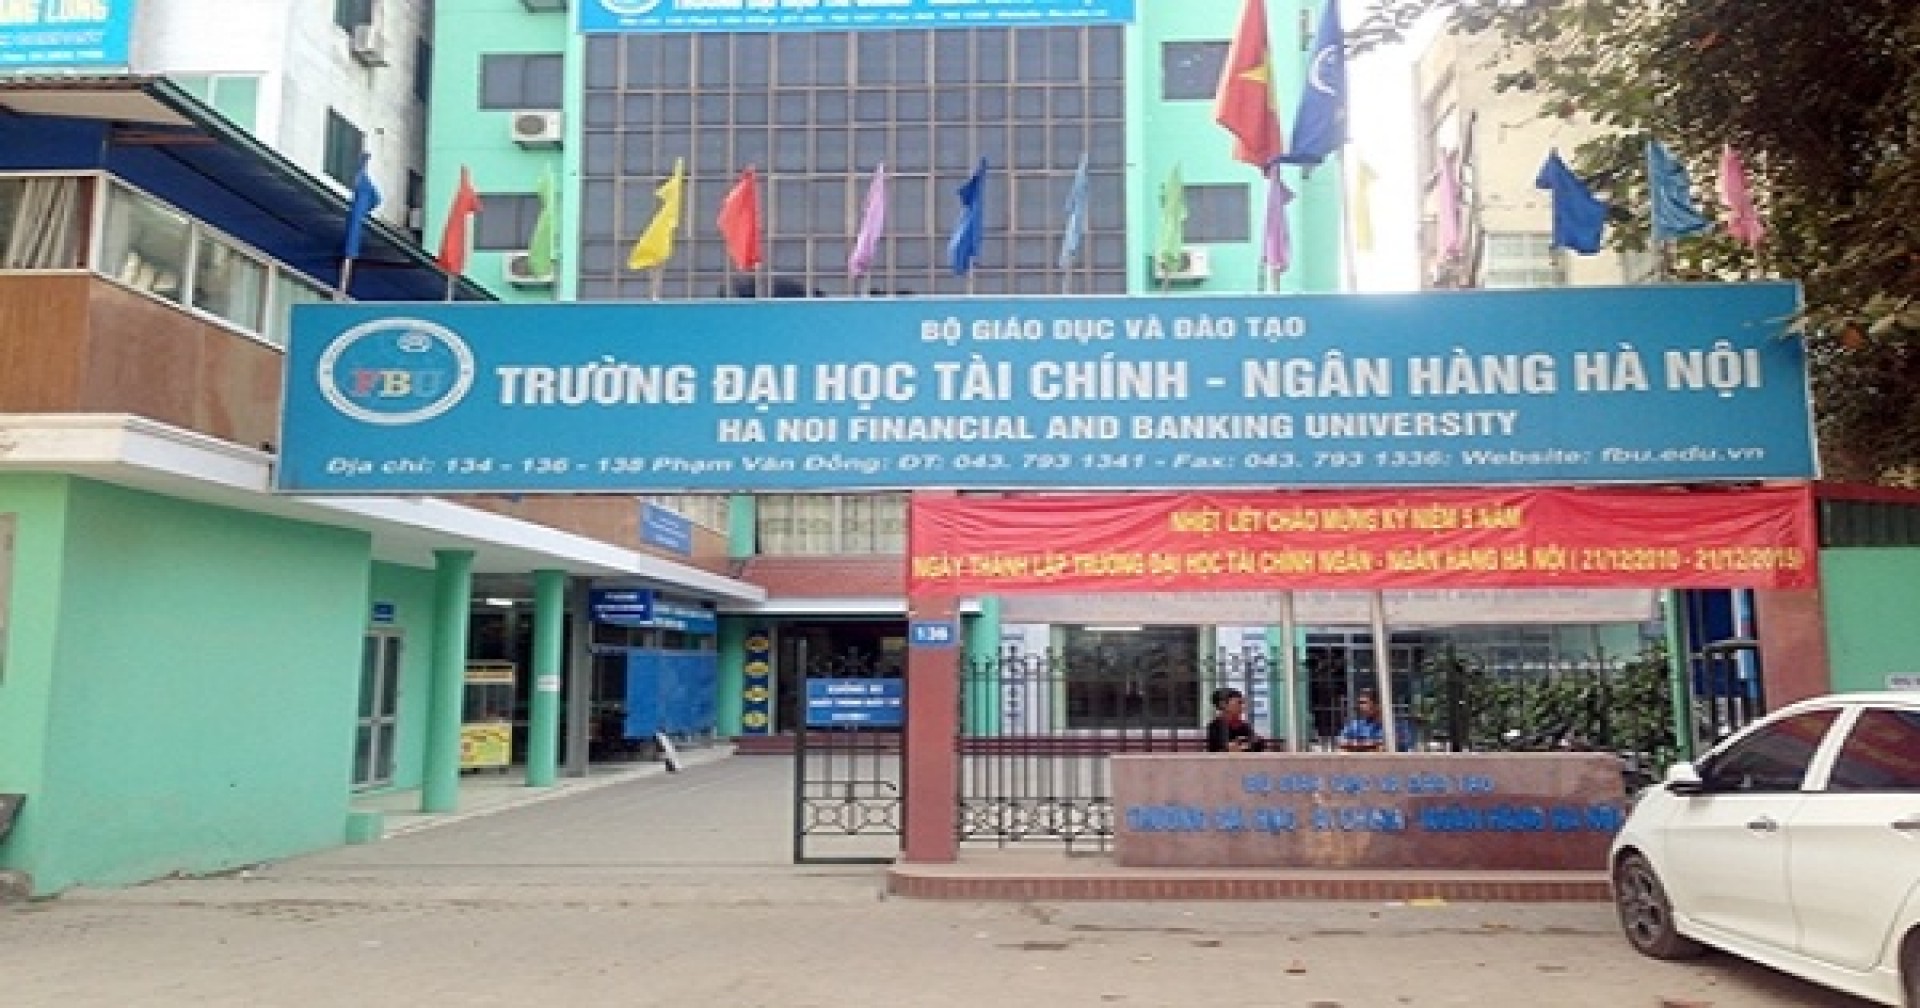 Đại học Tài Chính Ngân Hàng Hà Nội thông báo thông tin tuyển sinh 2019